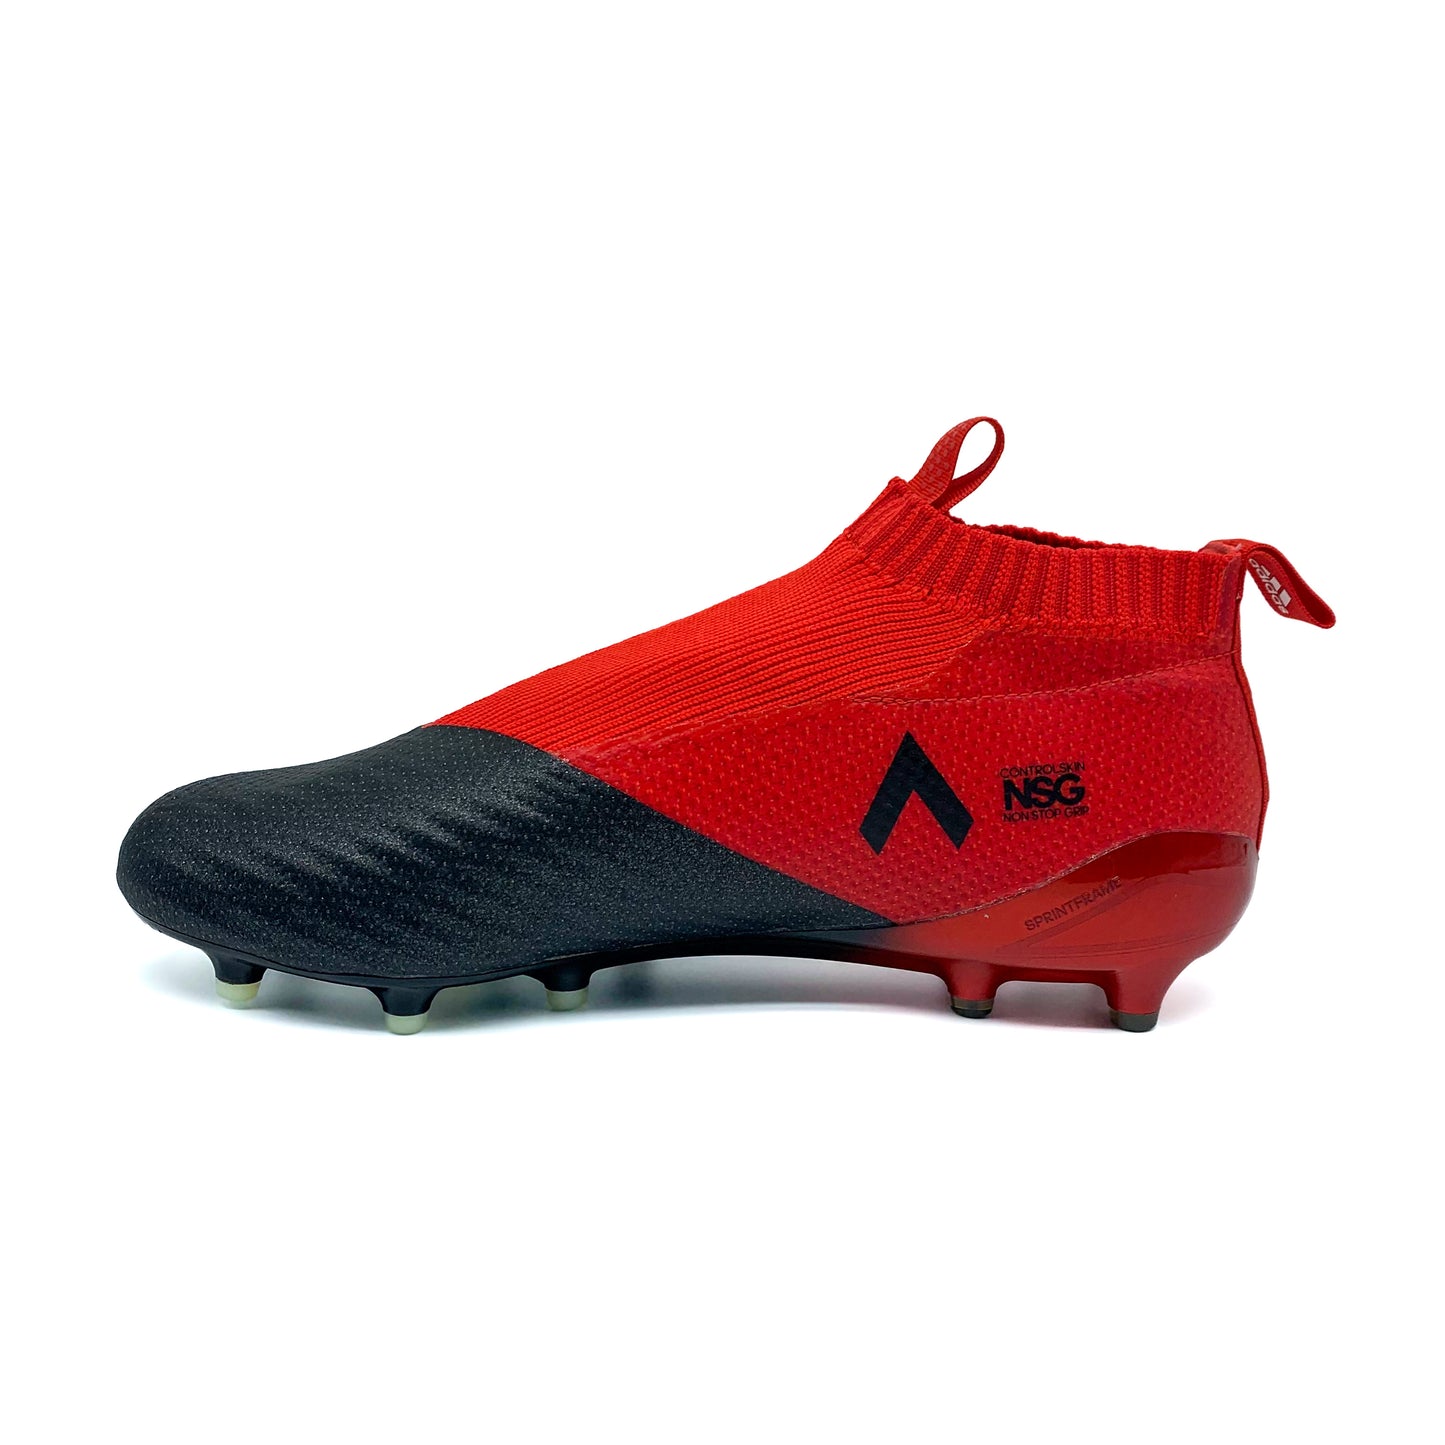 Adidas Ace 17+ Purecontrol FG